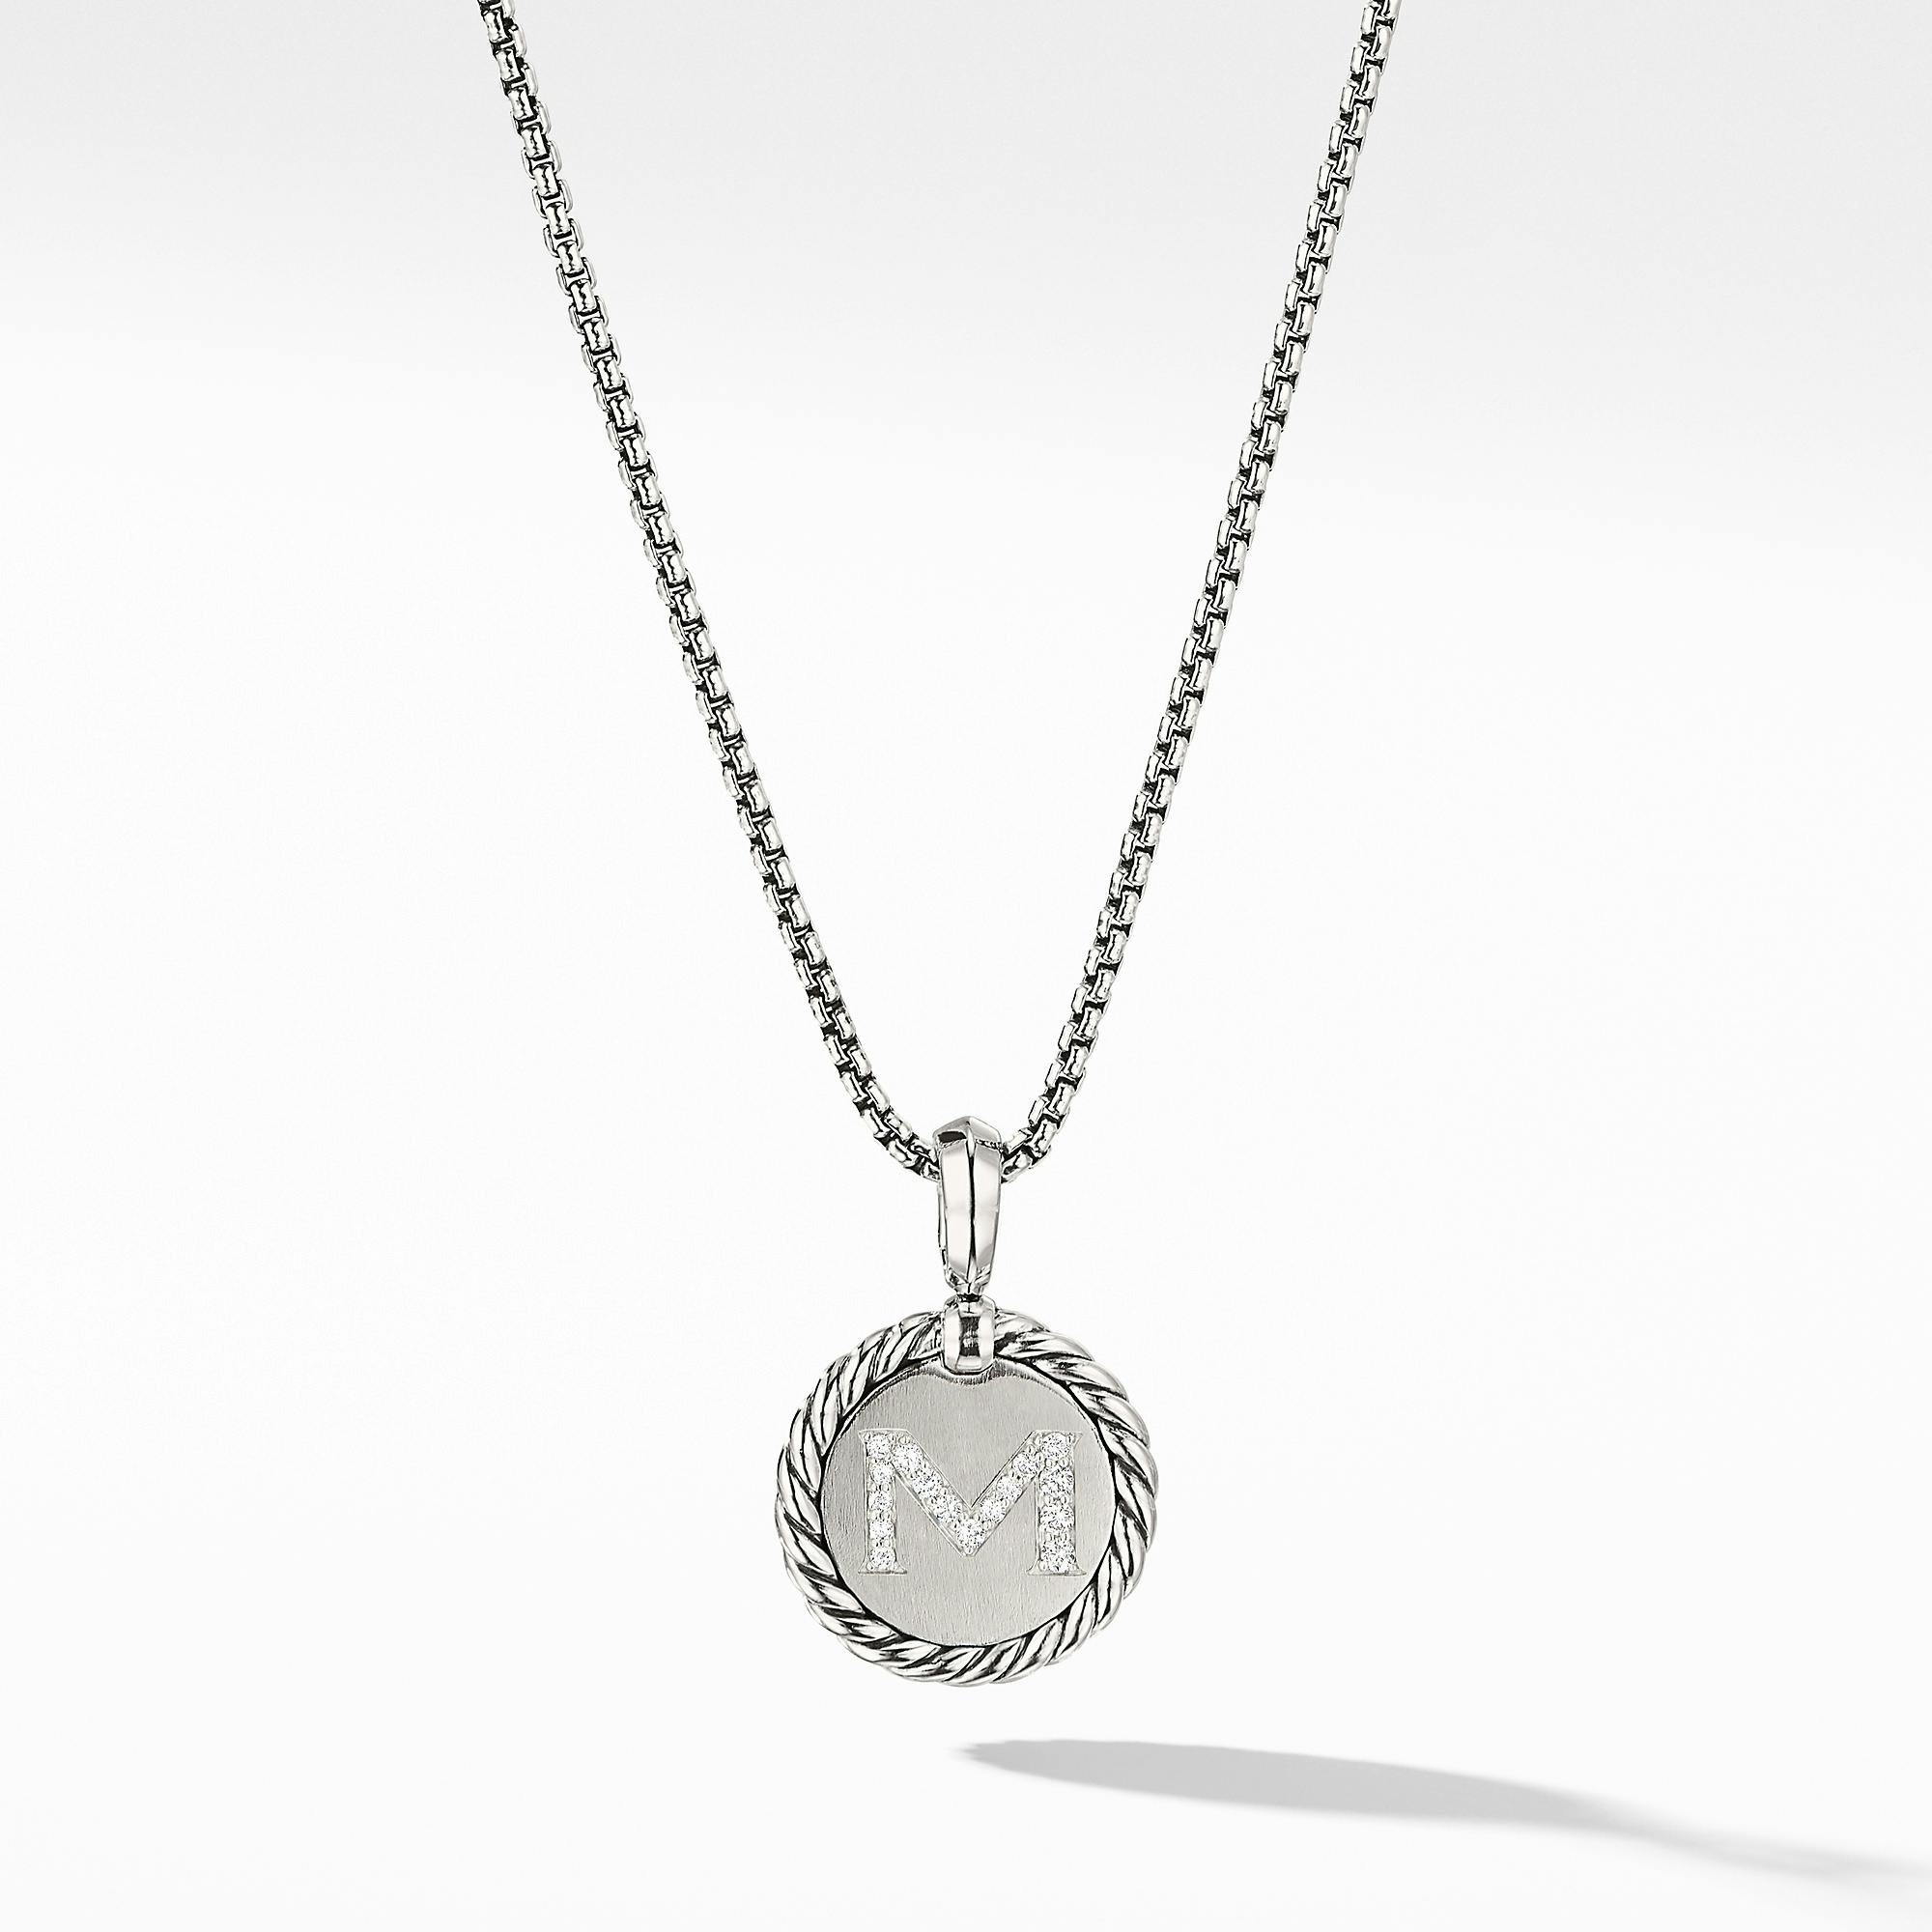 David Yurman "M" initial Charm Necklace with Diamonds